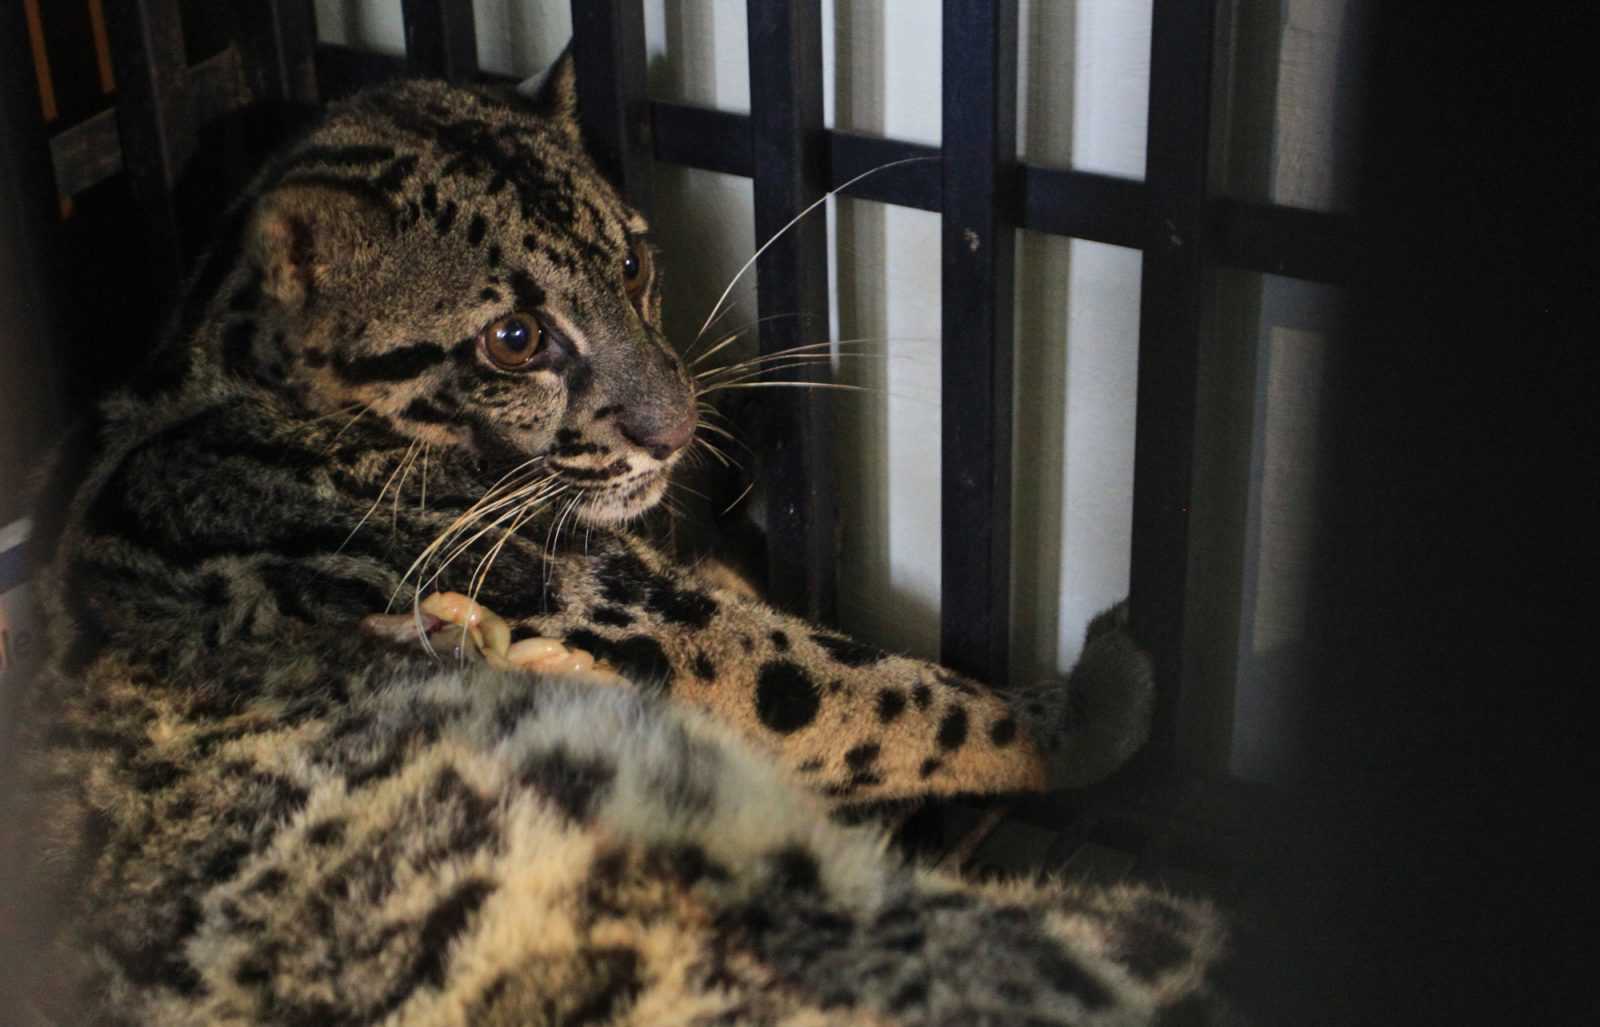 Temukan Jejak Macan Dahan di Kebun, Resor KSDA Agam Pasang Kamera Trap